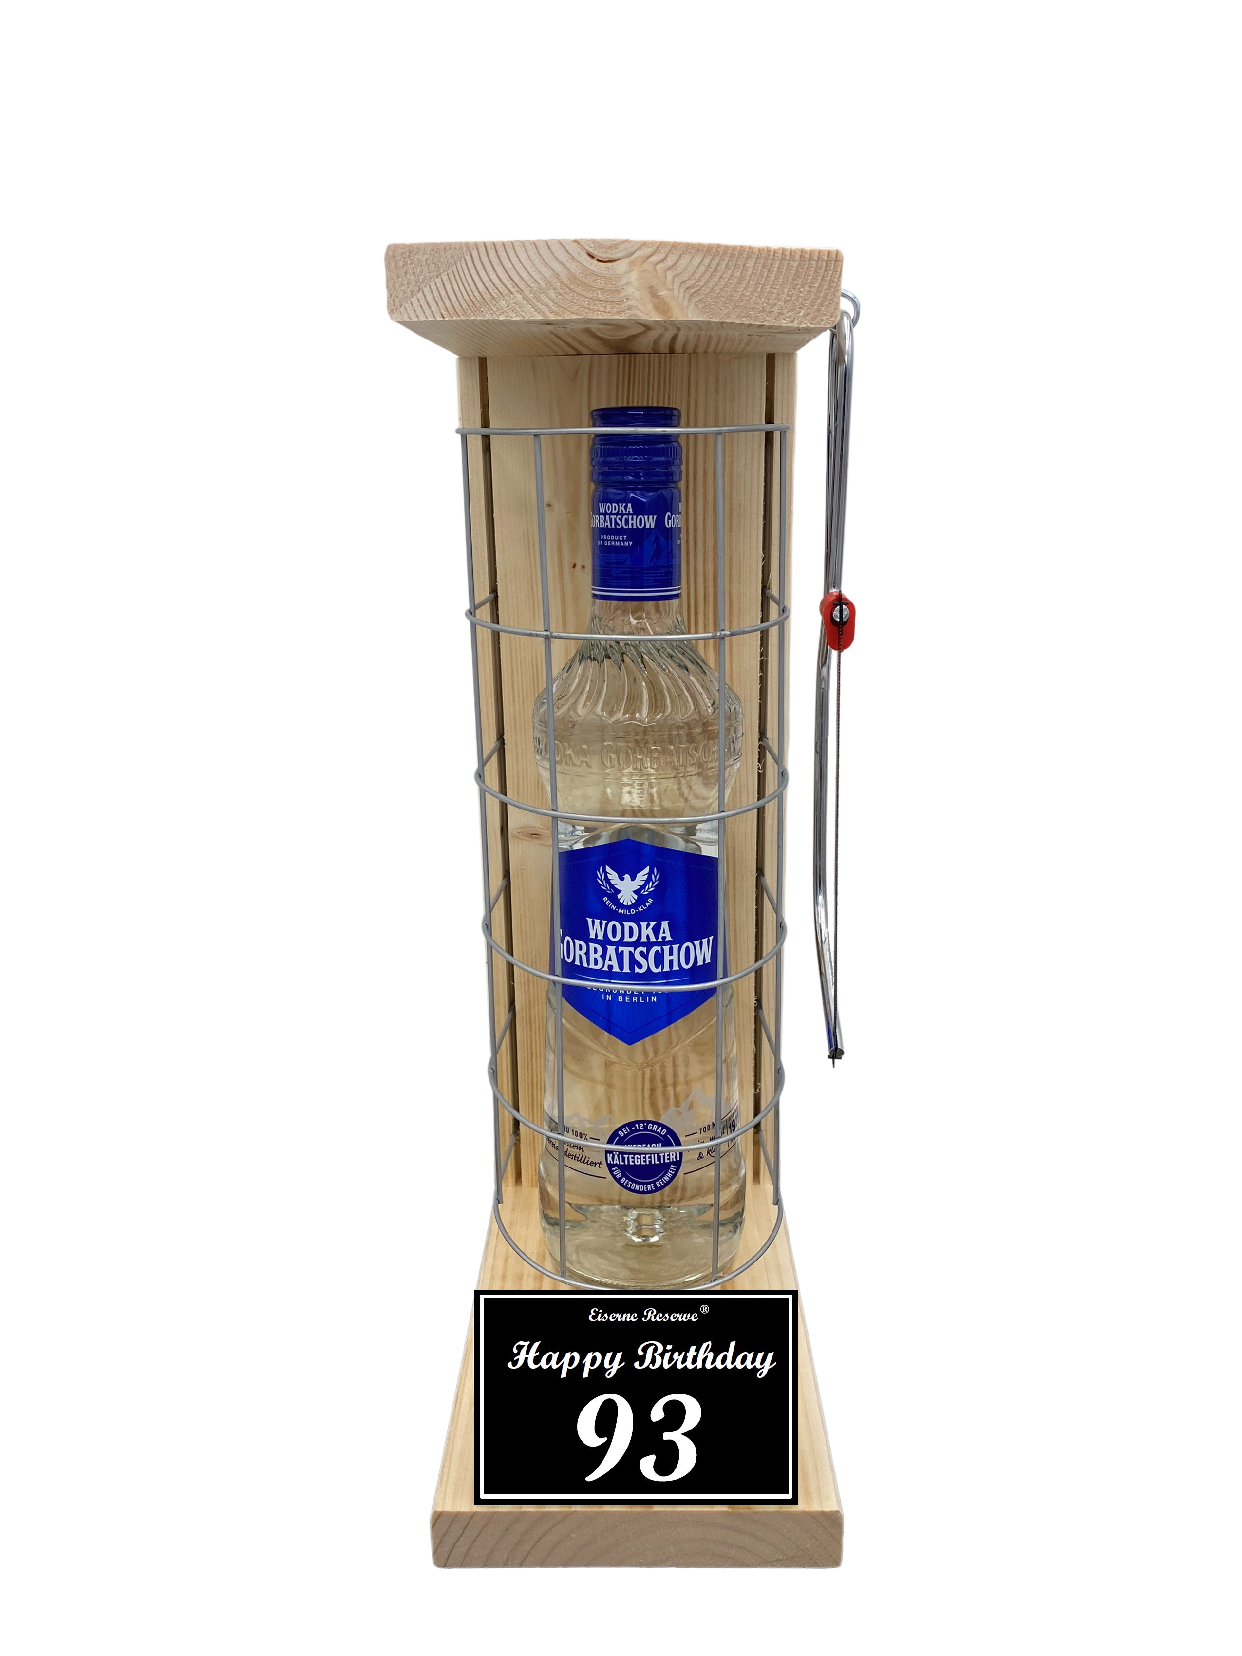 Wodka Geschenk zum 93 Geburtstag - Eiserne Reserve Gitterkäfig